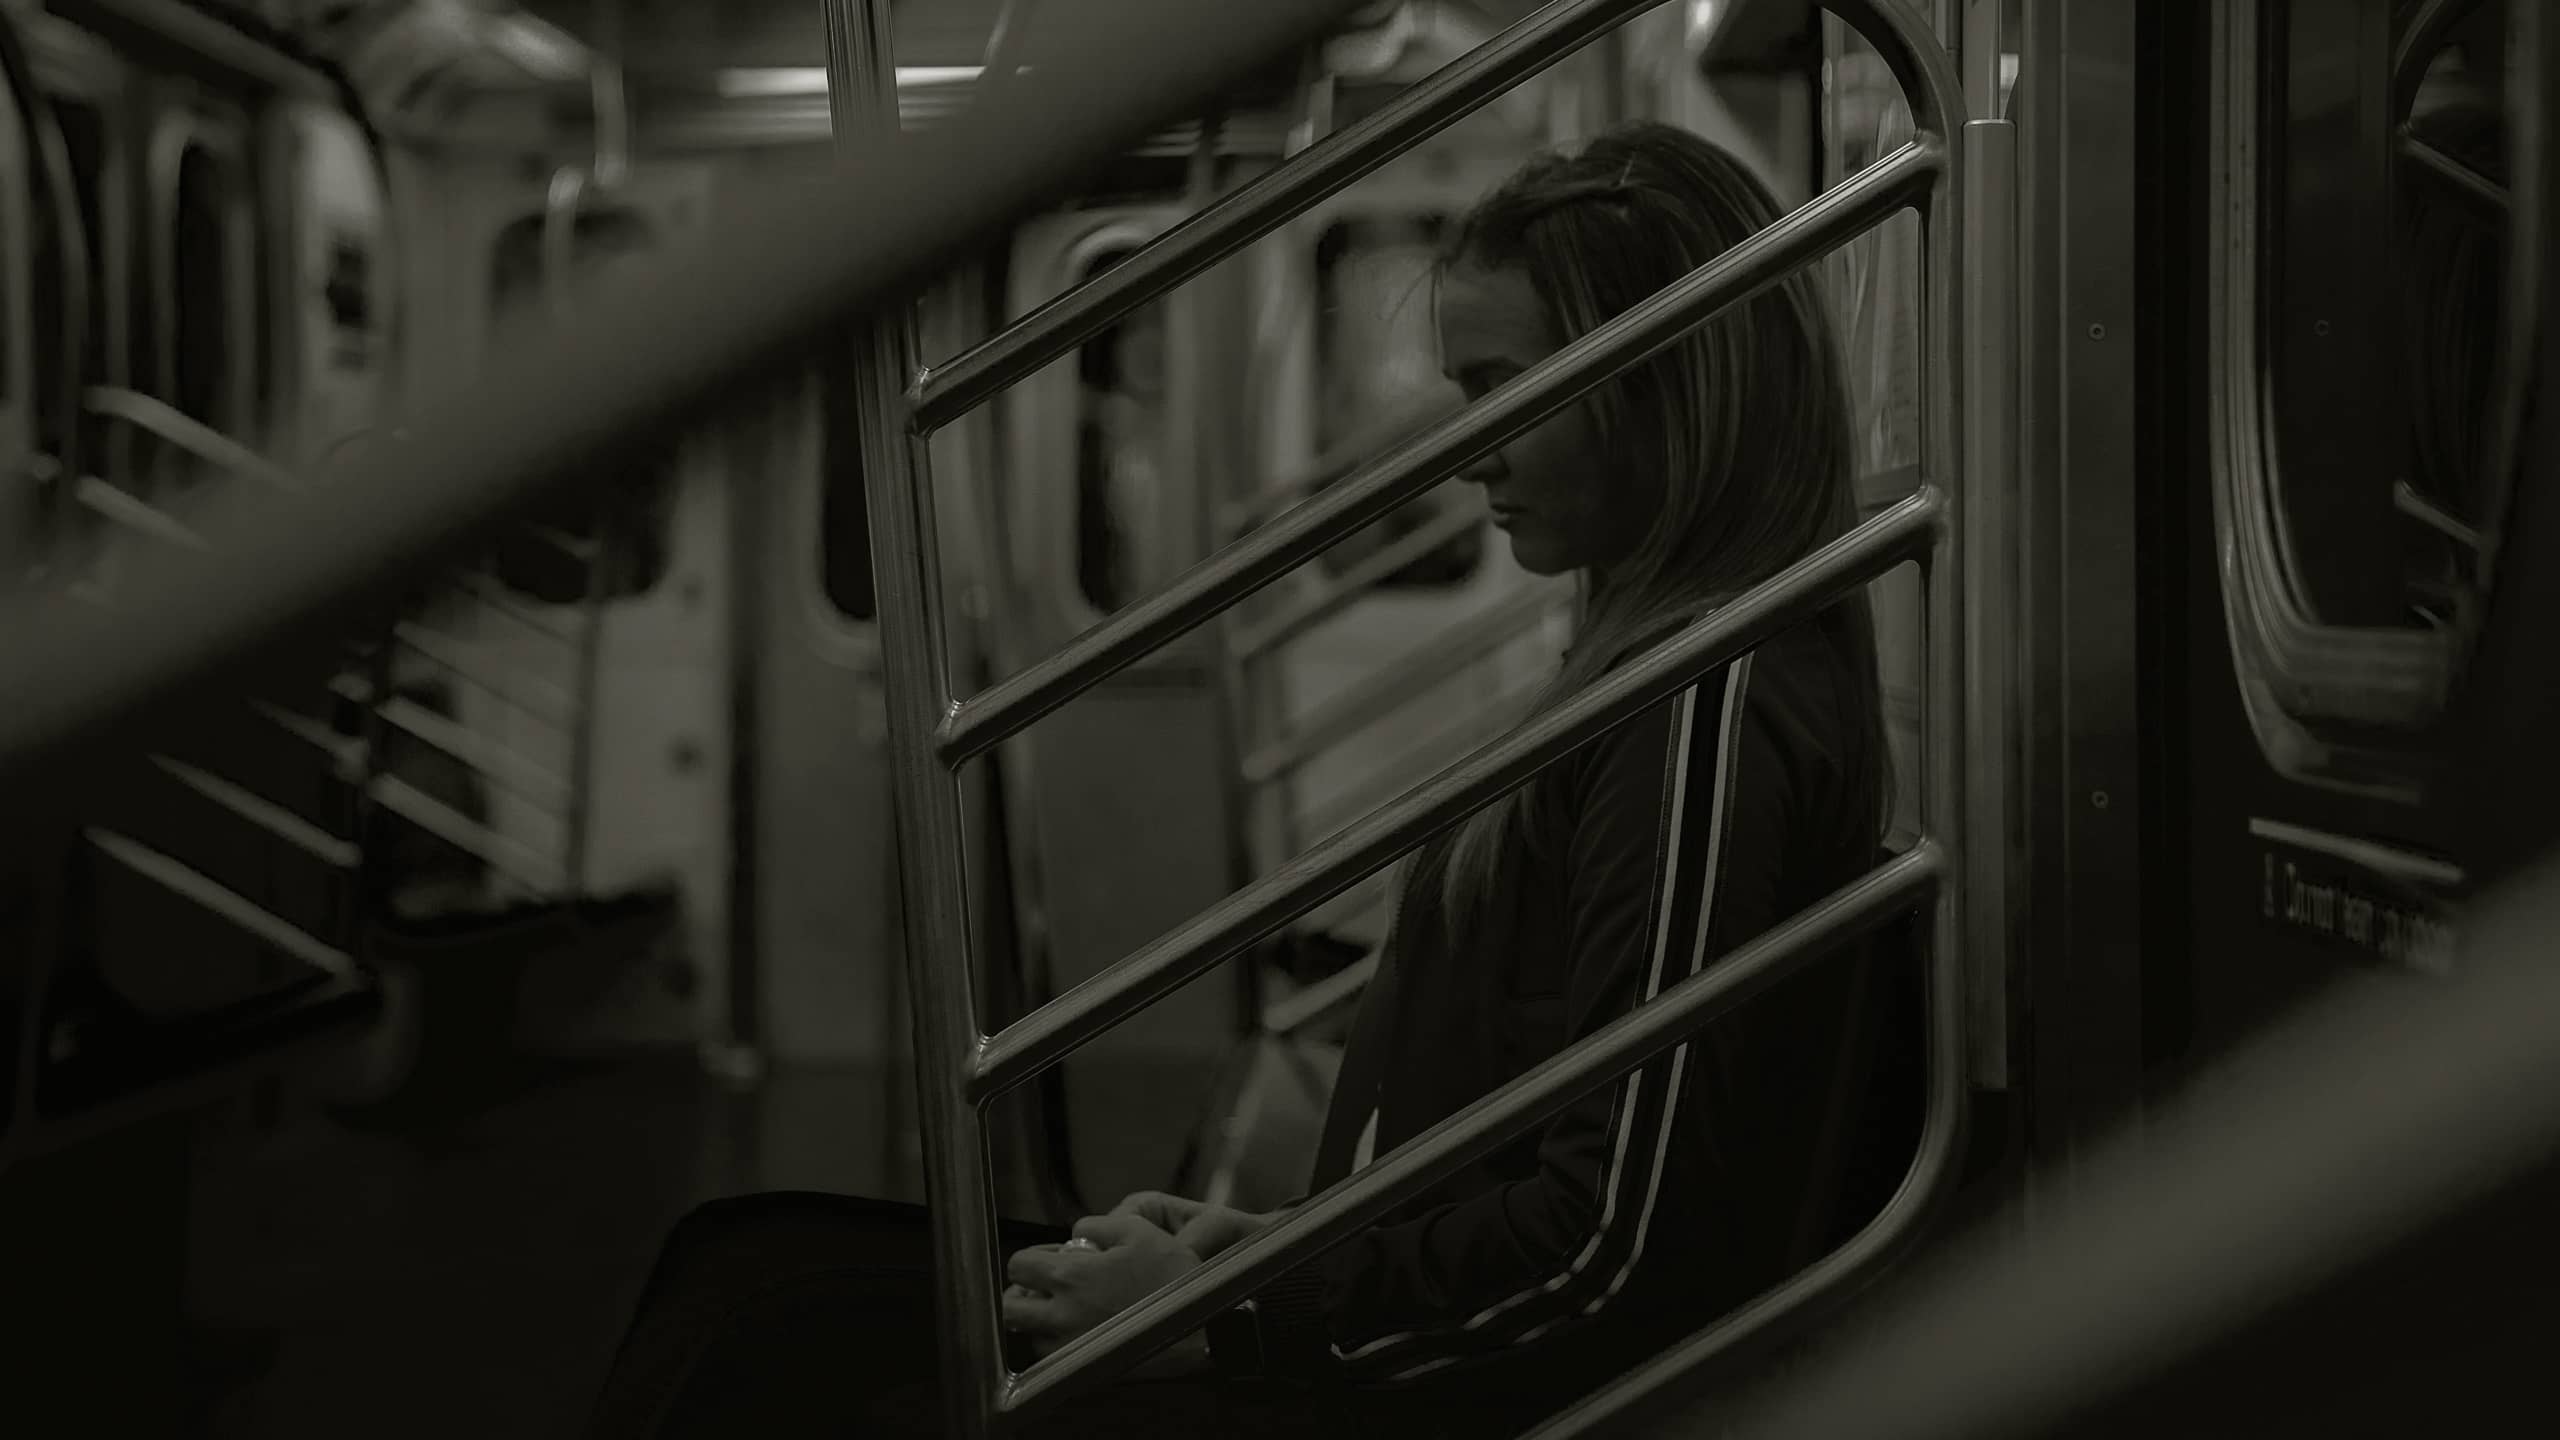 Girl alone on tube train